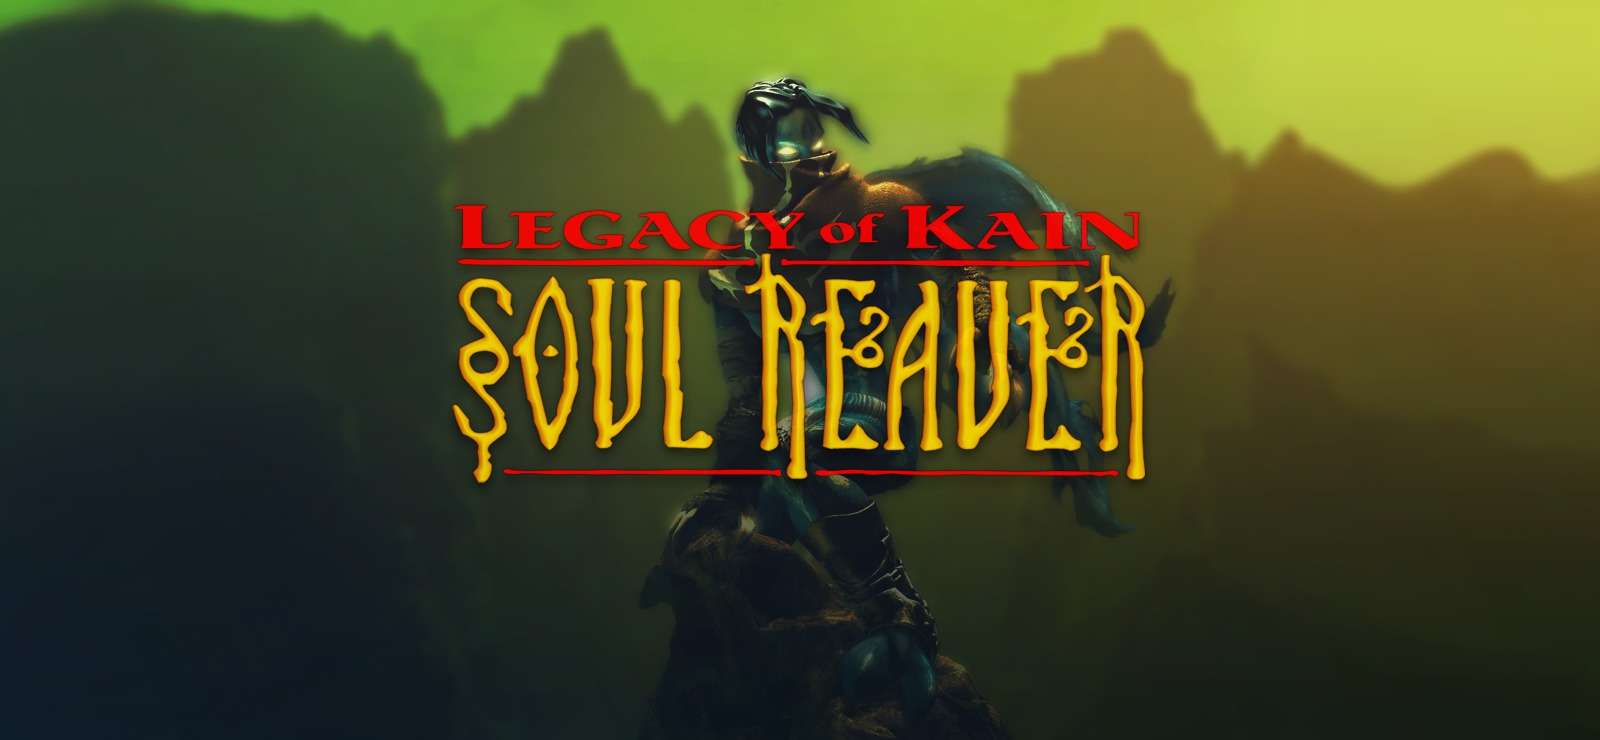 Legacy of Kain: Soul Reaver protagoniza nuevos rumores sobre su remaster